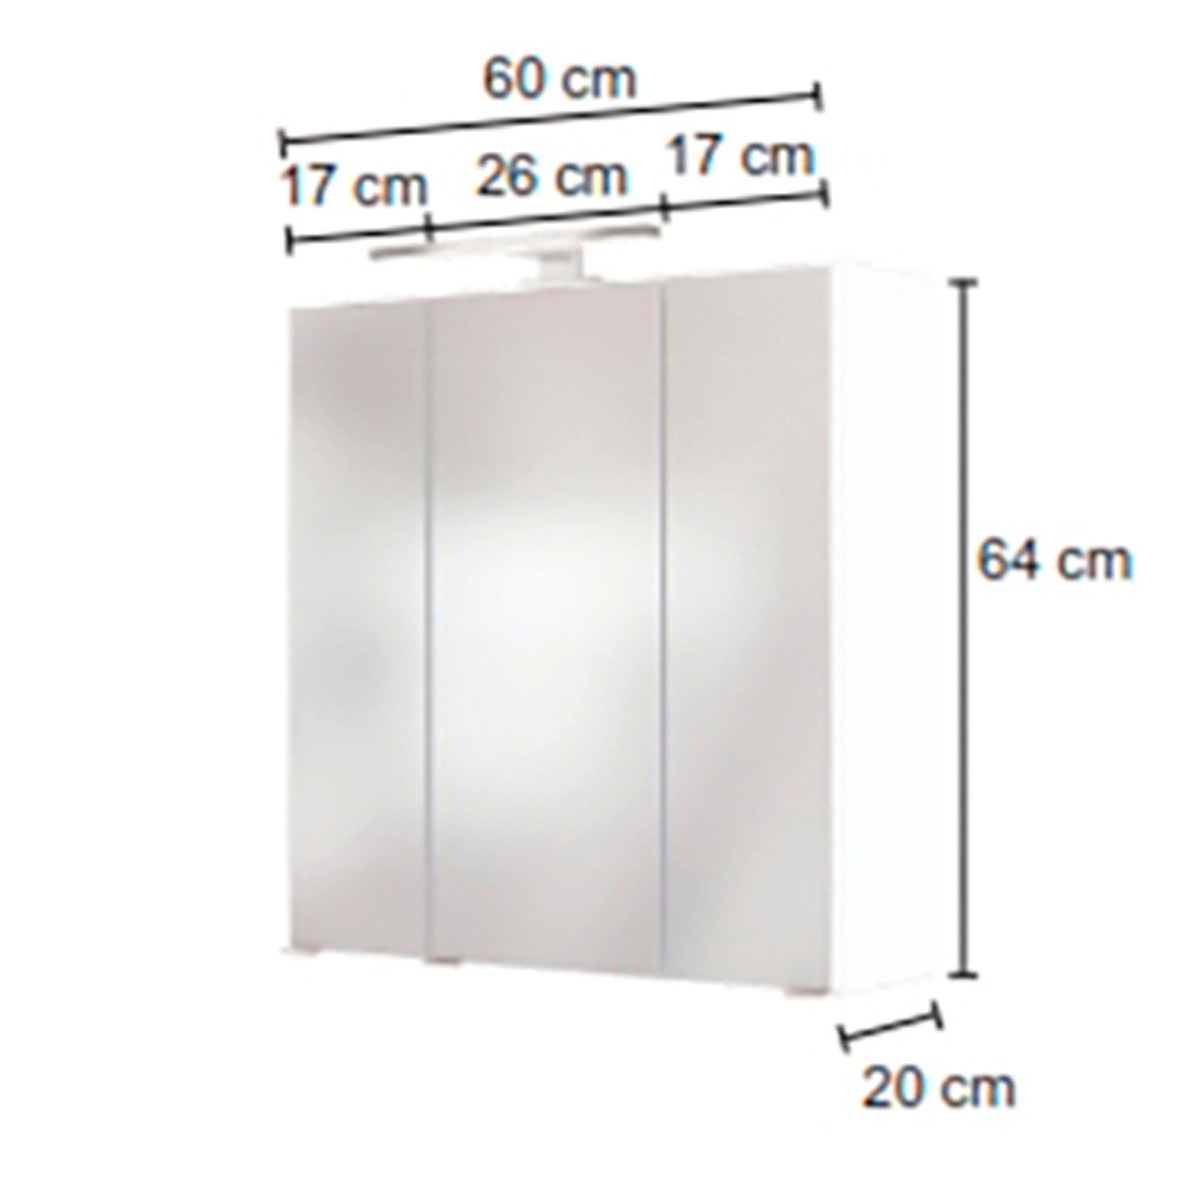 HELD MÖBEL Spiegelschrank »Matera«, Breite 60 cm, mit 6 verstellbaren Glasböden